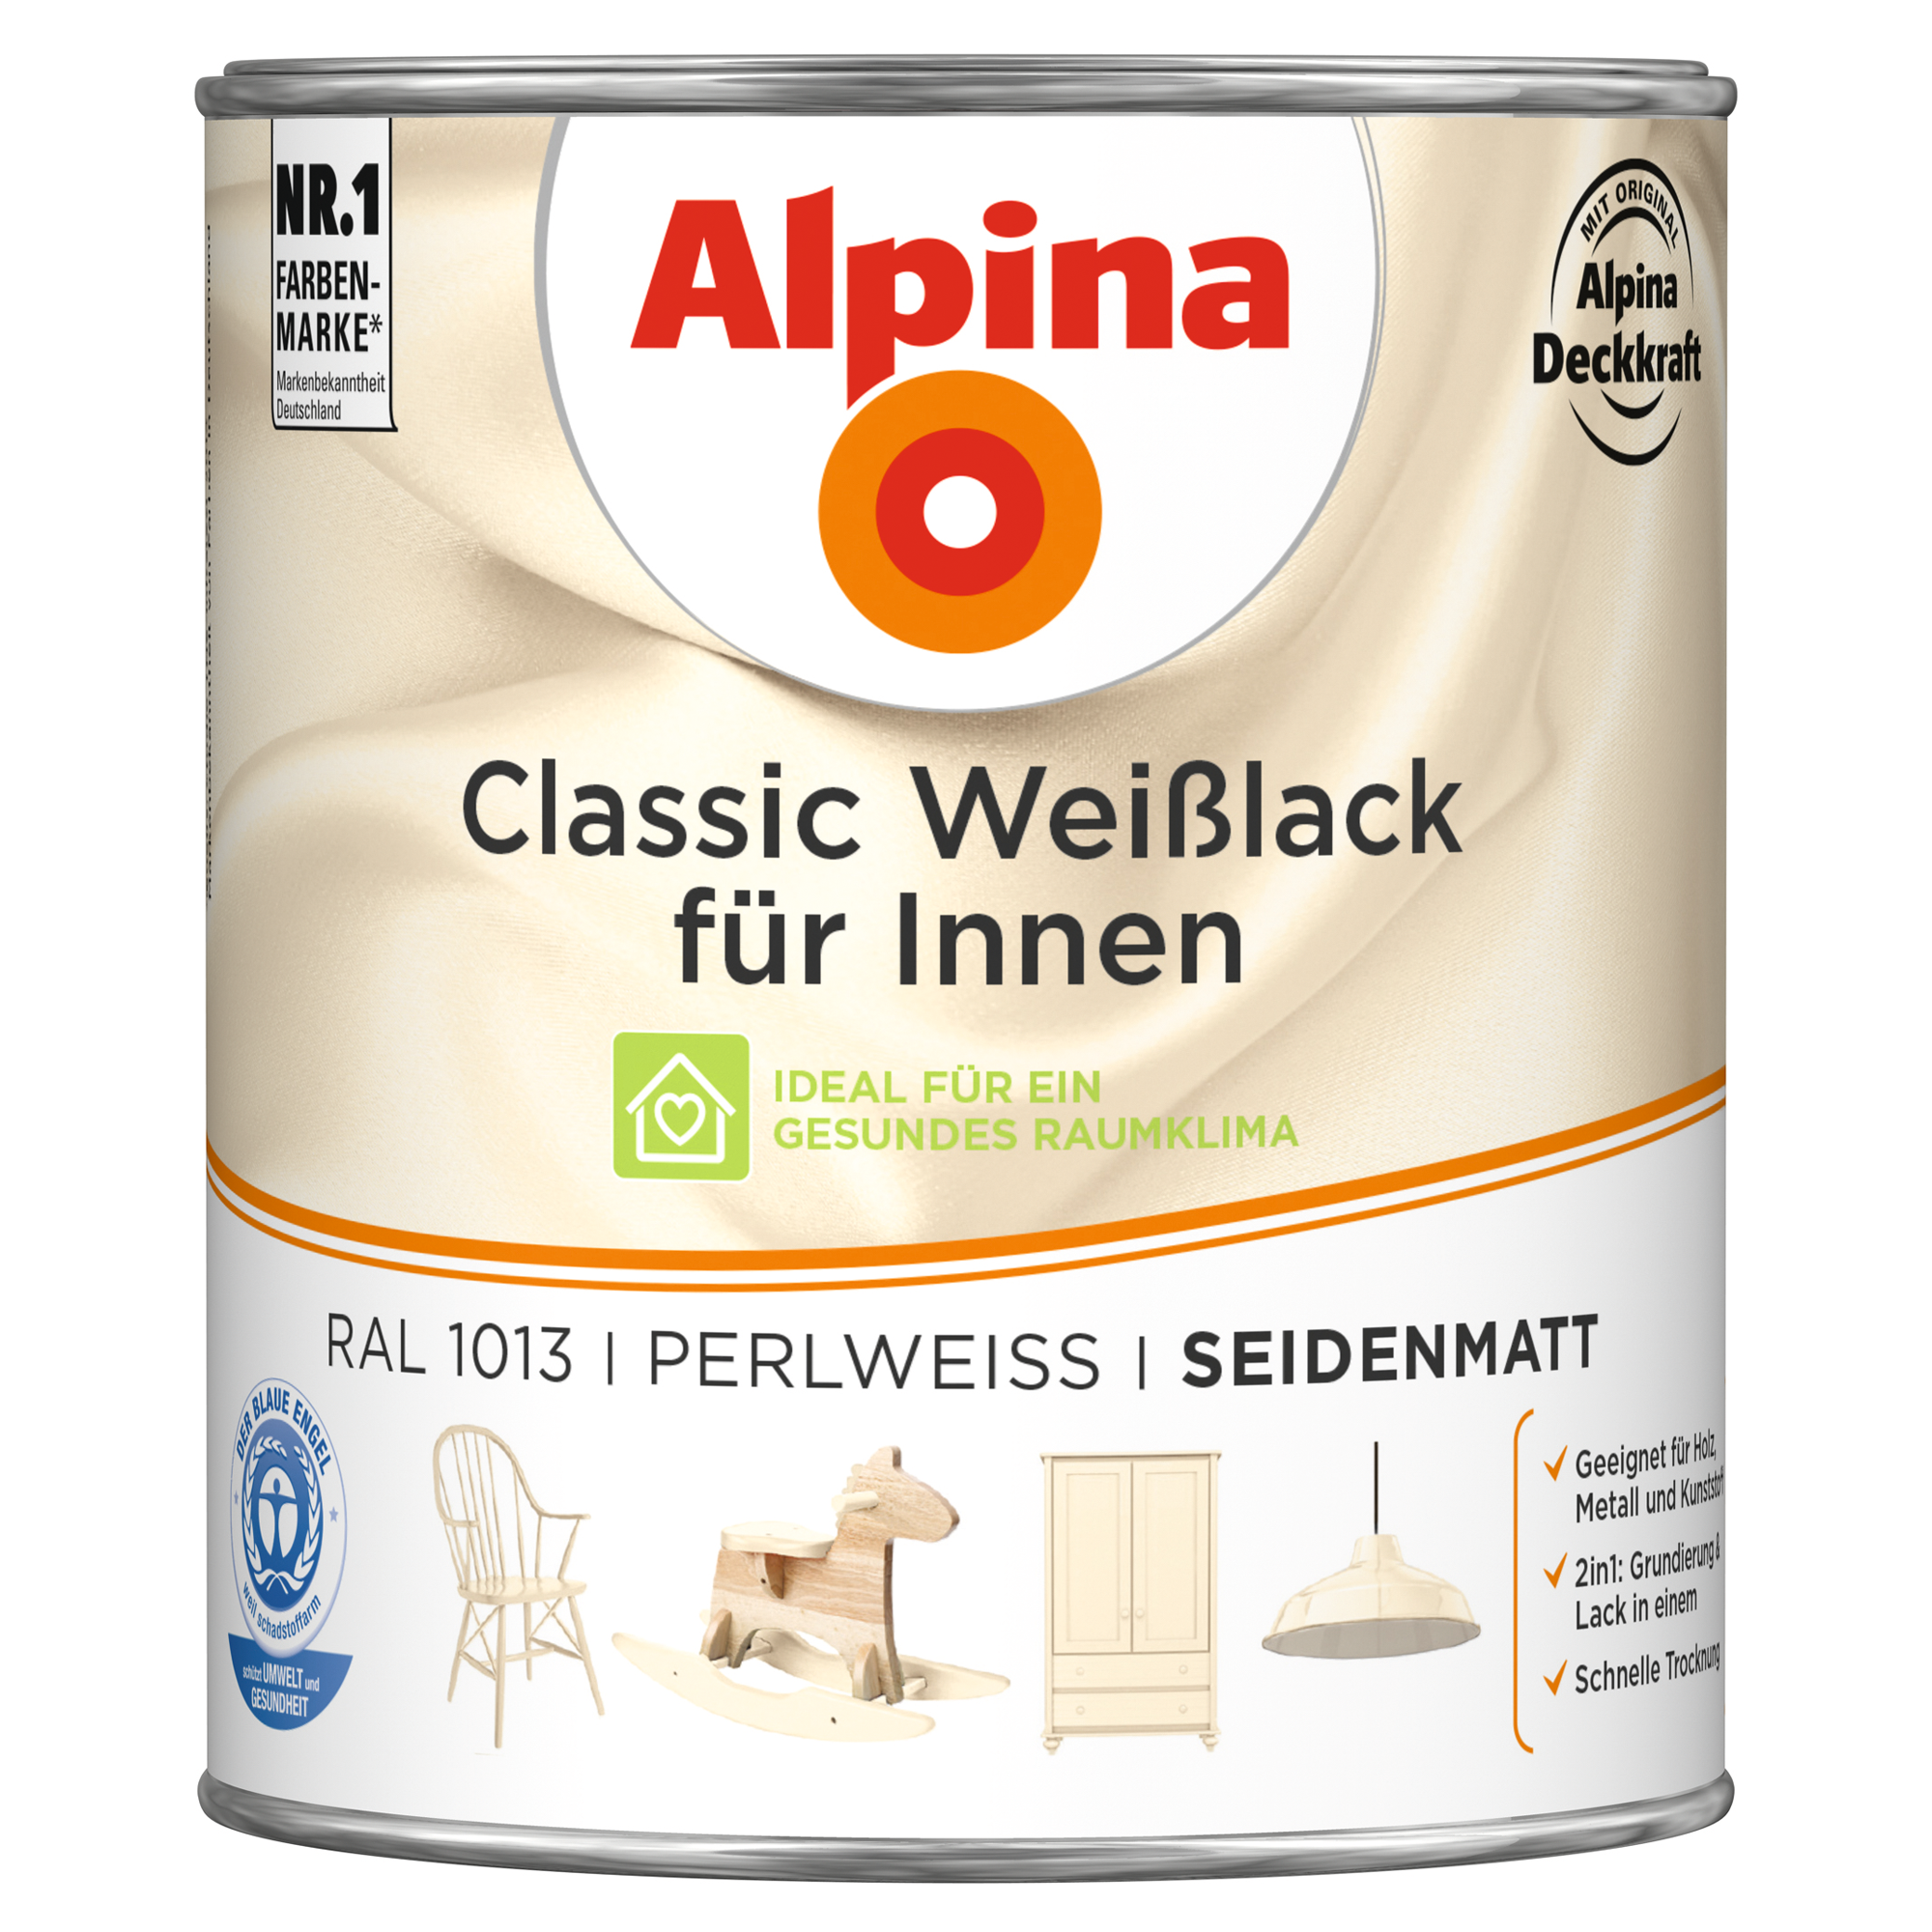 Weißlack für Innen perlweiß seidenmatt 750 ml + product picture